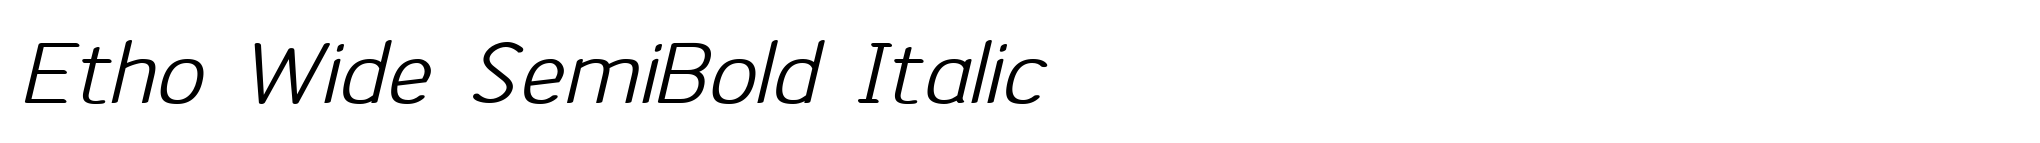 Etho Wide SemiBold Italic image